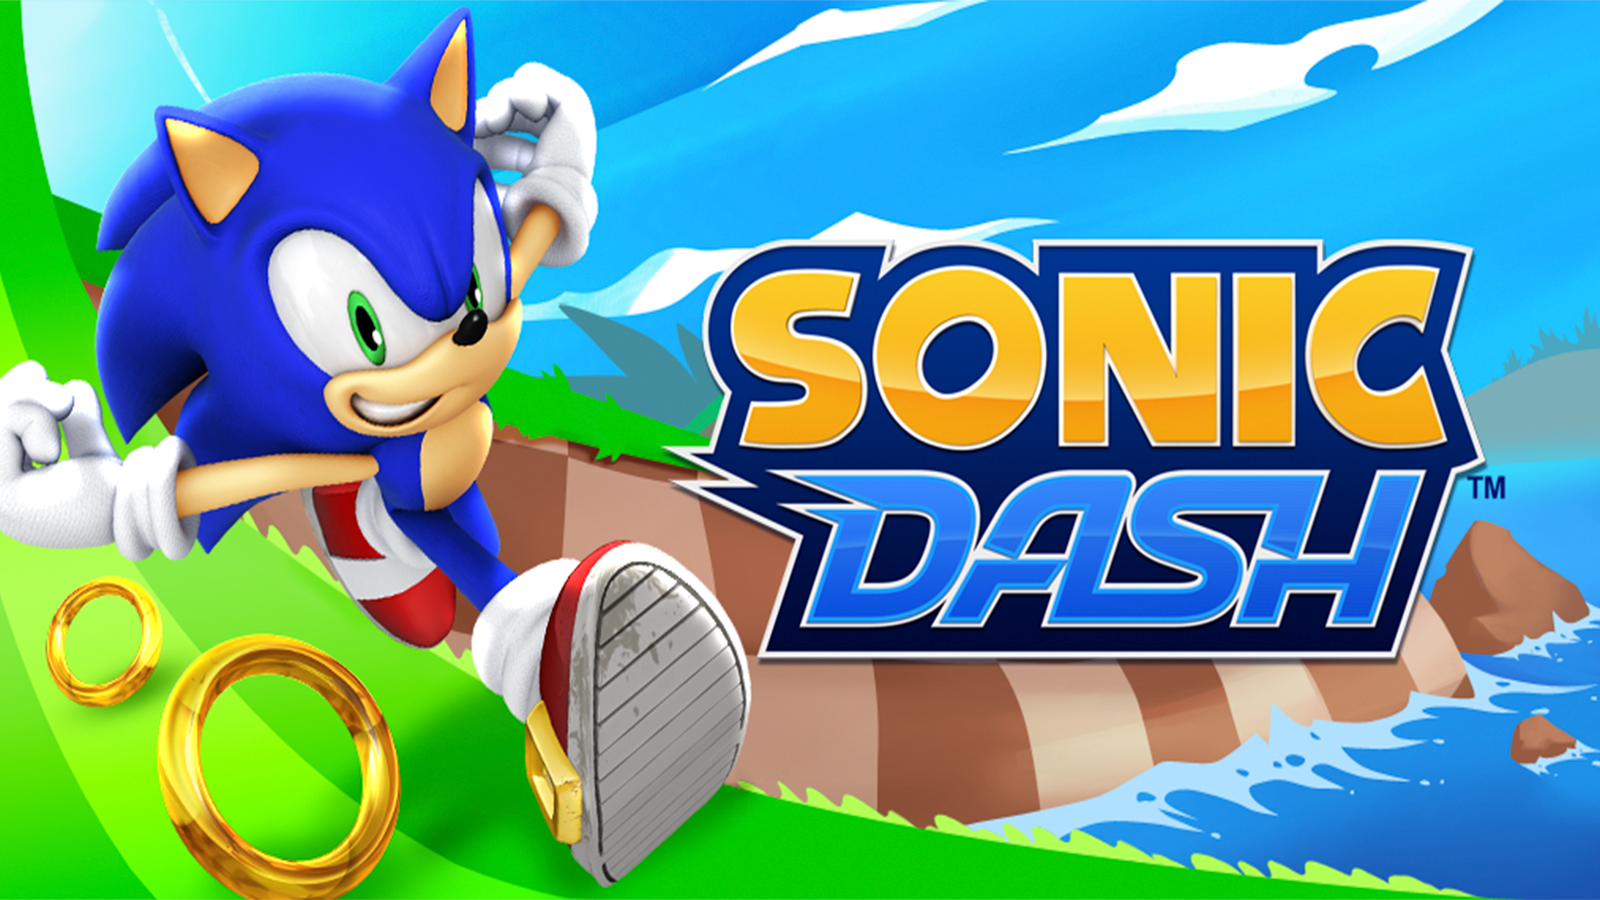 SONIC DASH - Jogando com todos os personagens - Android Gameplay